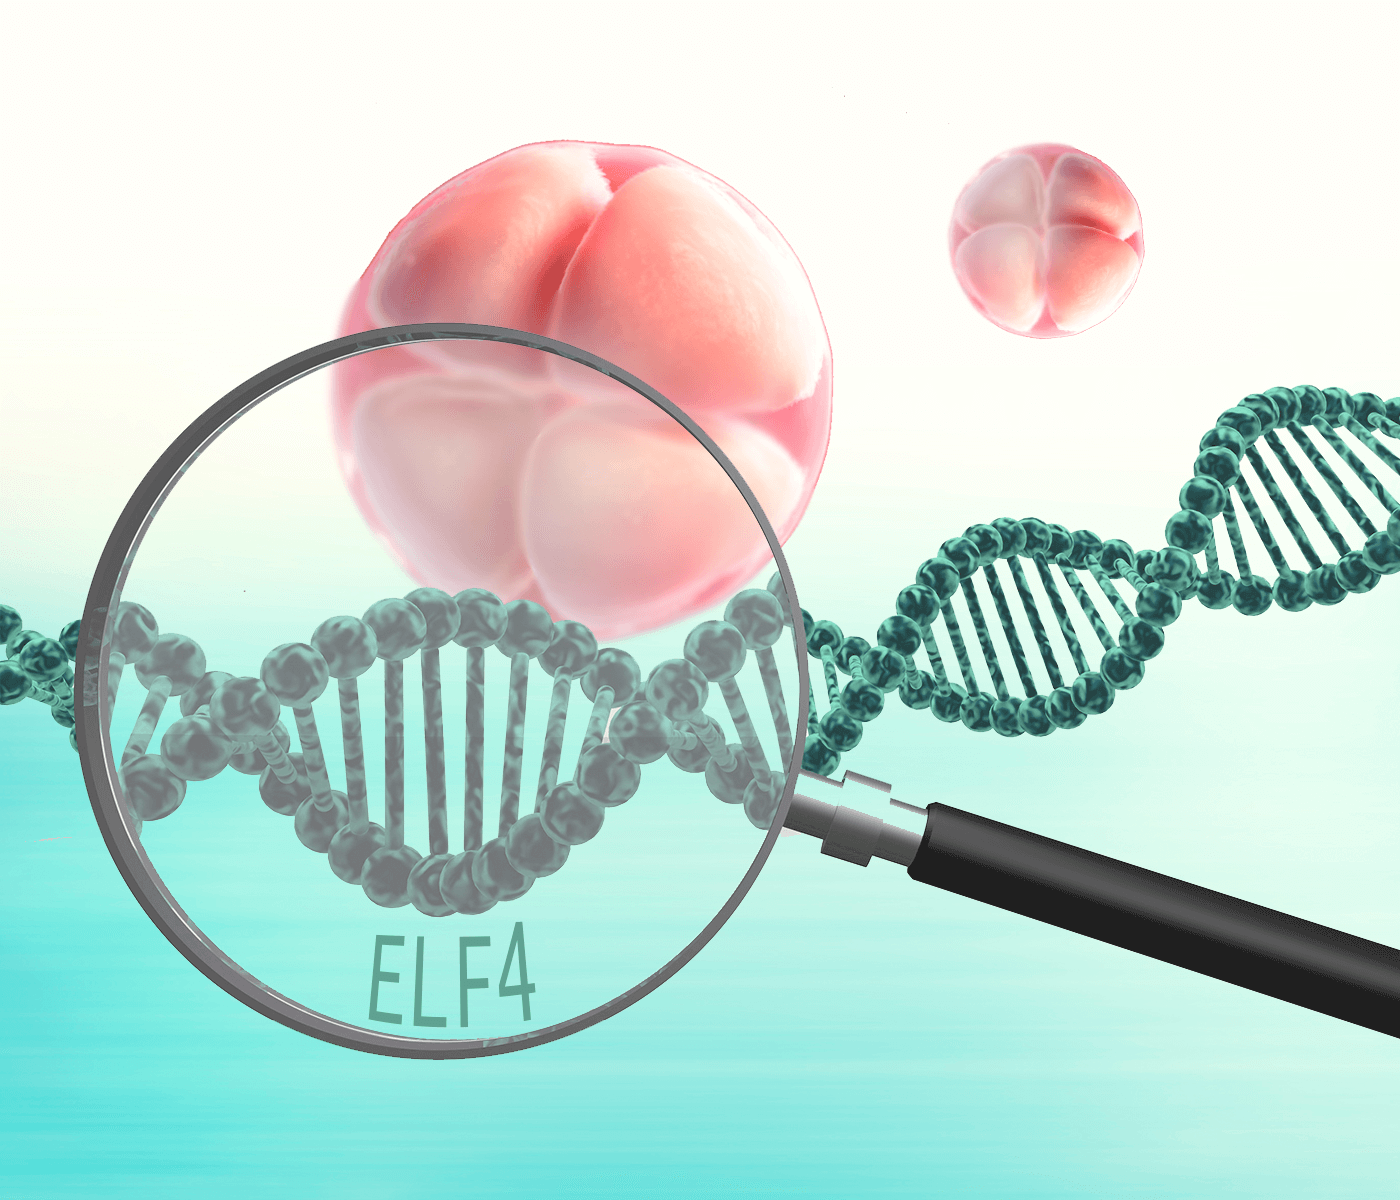 Papel del gen ELF4 en el desarrollo embrionario porcino